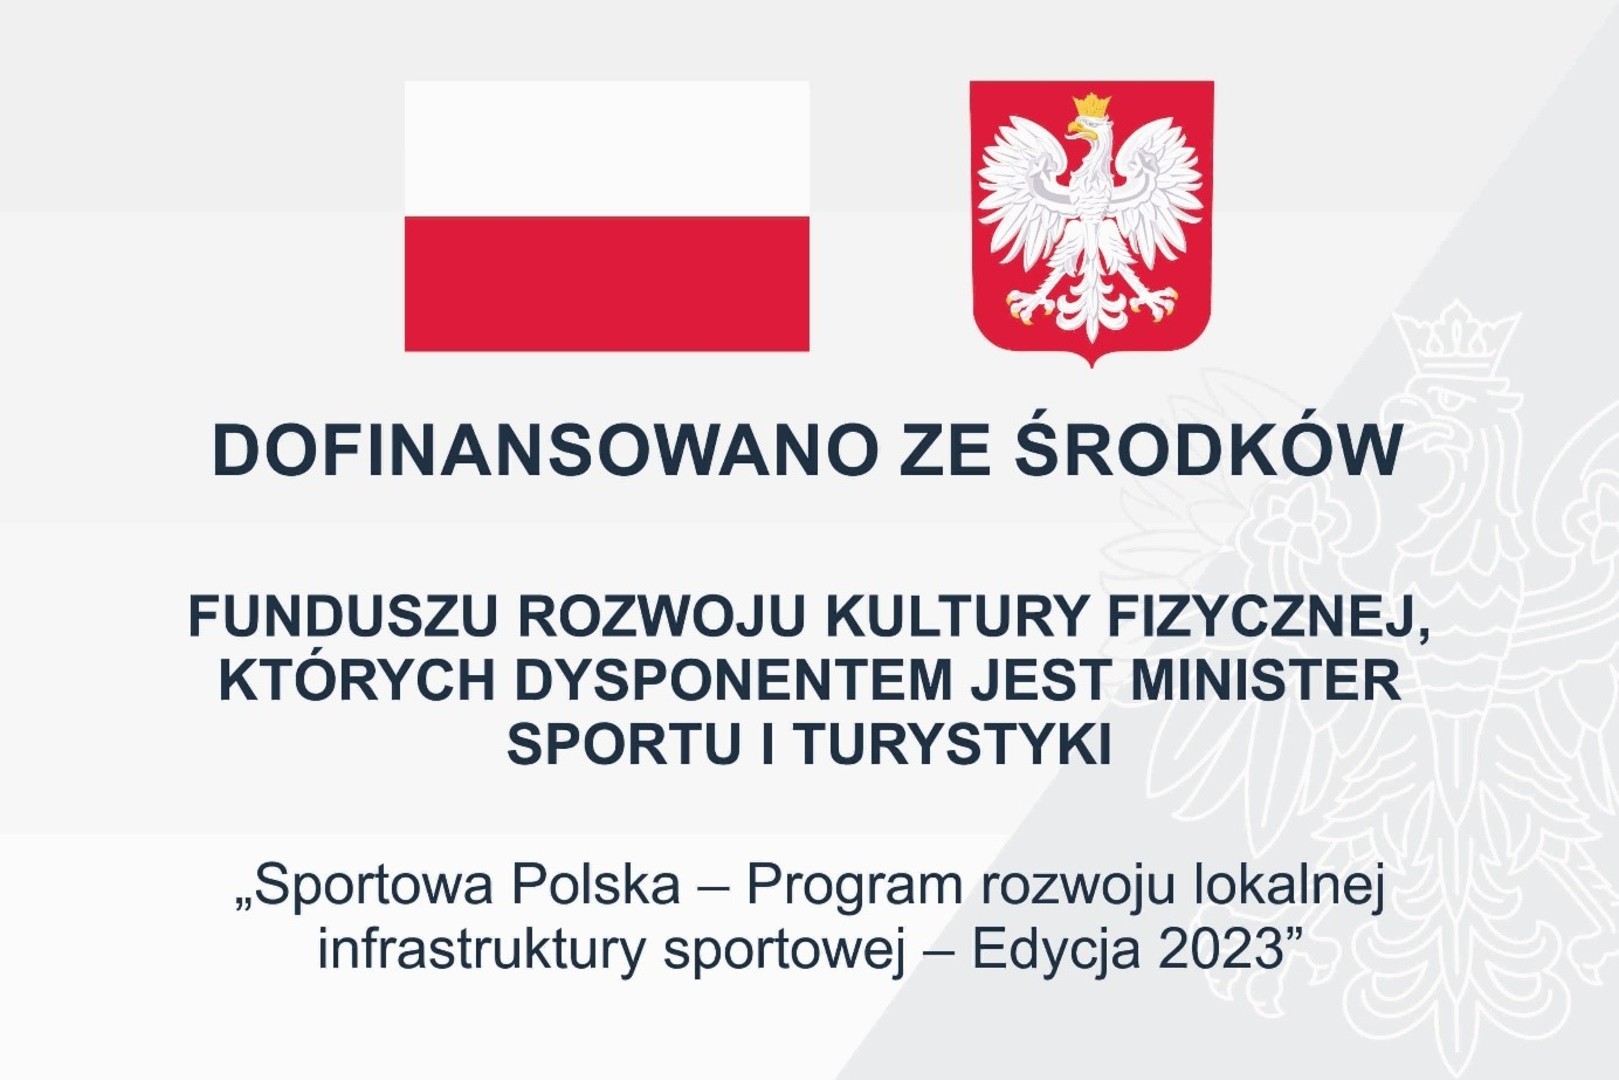 DOfinansowanie sportowa polska.jpg